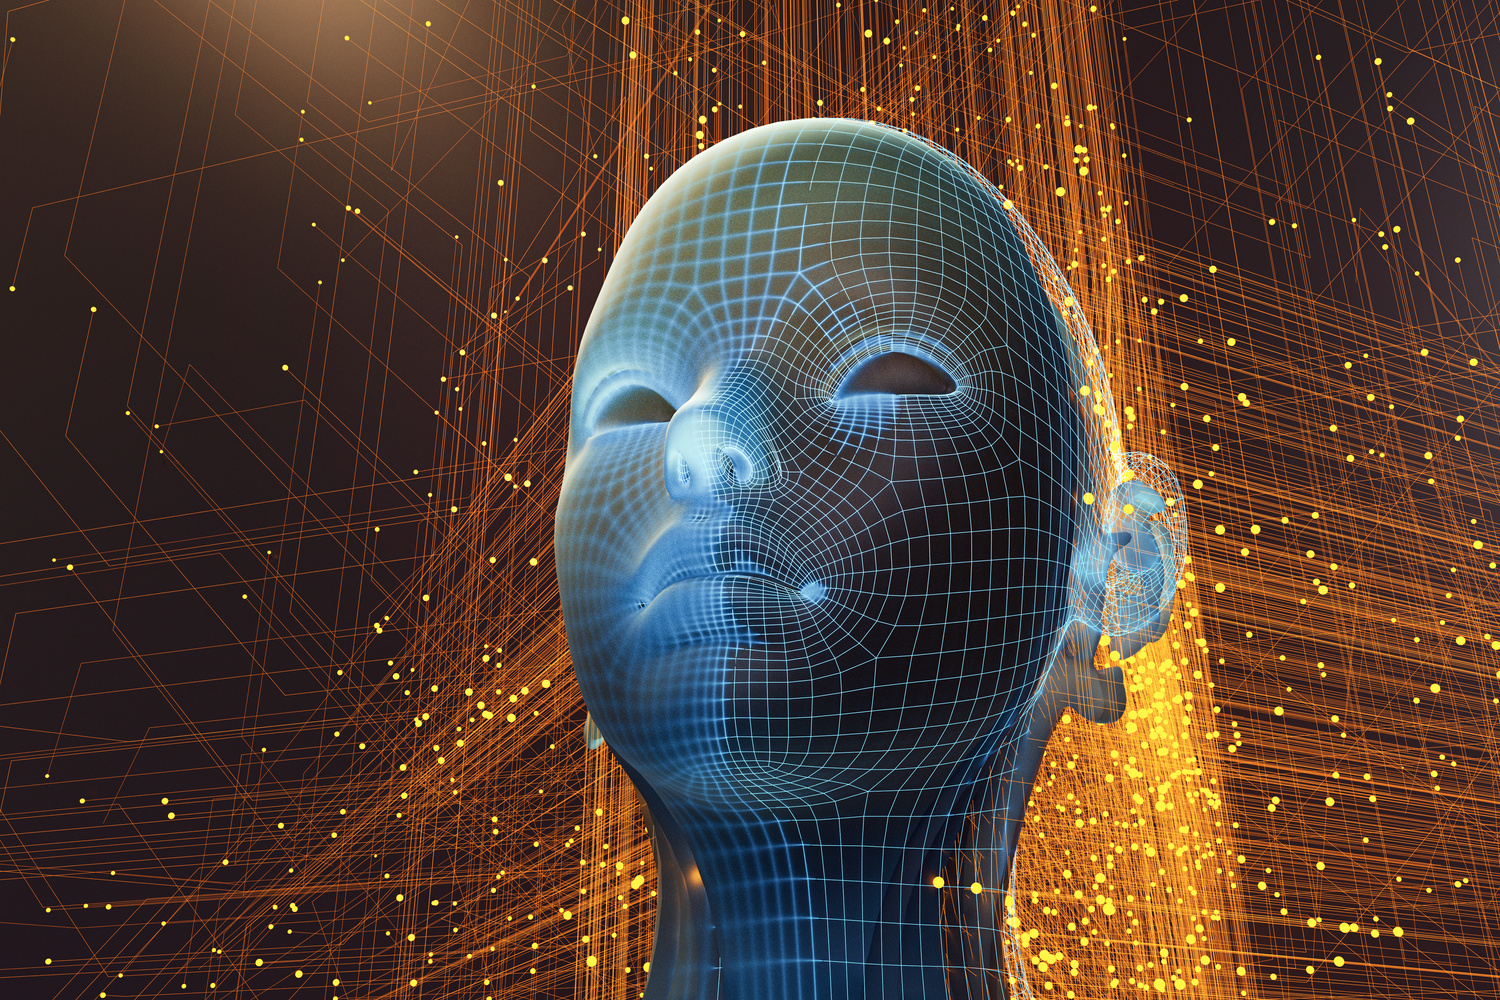 Abstract futuristic cyborg AI head